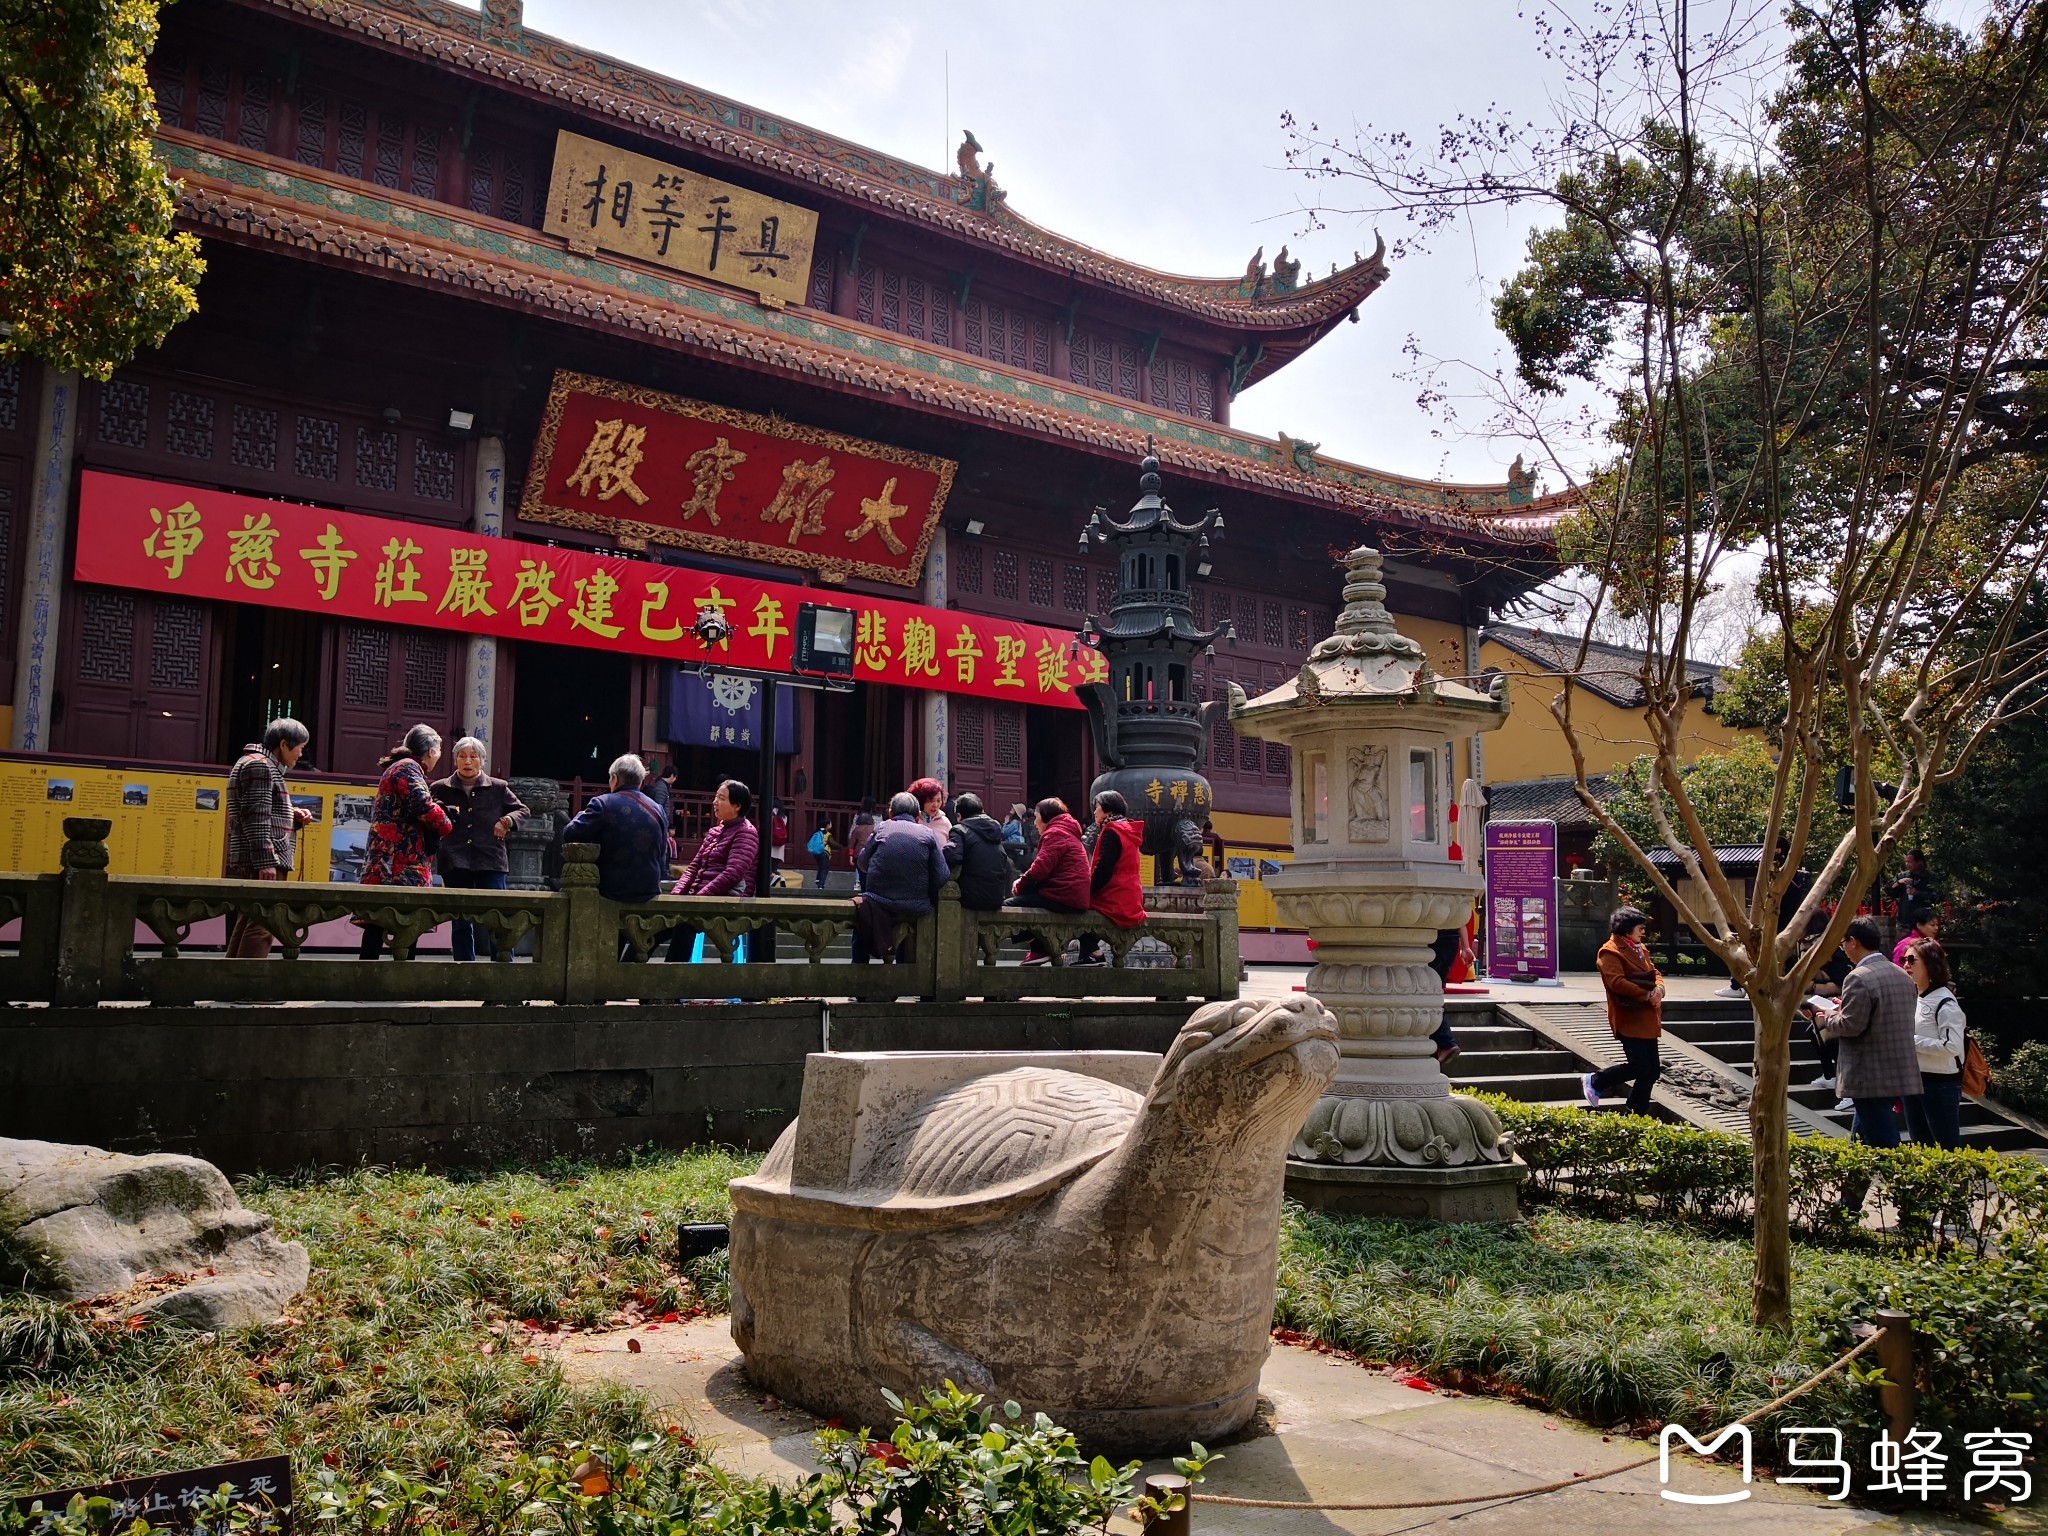 周末参观游览杭州的净慈寺(净寺)----走遍杭州